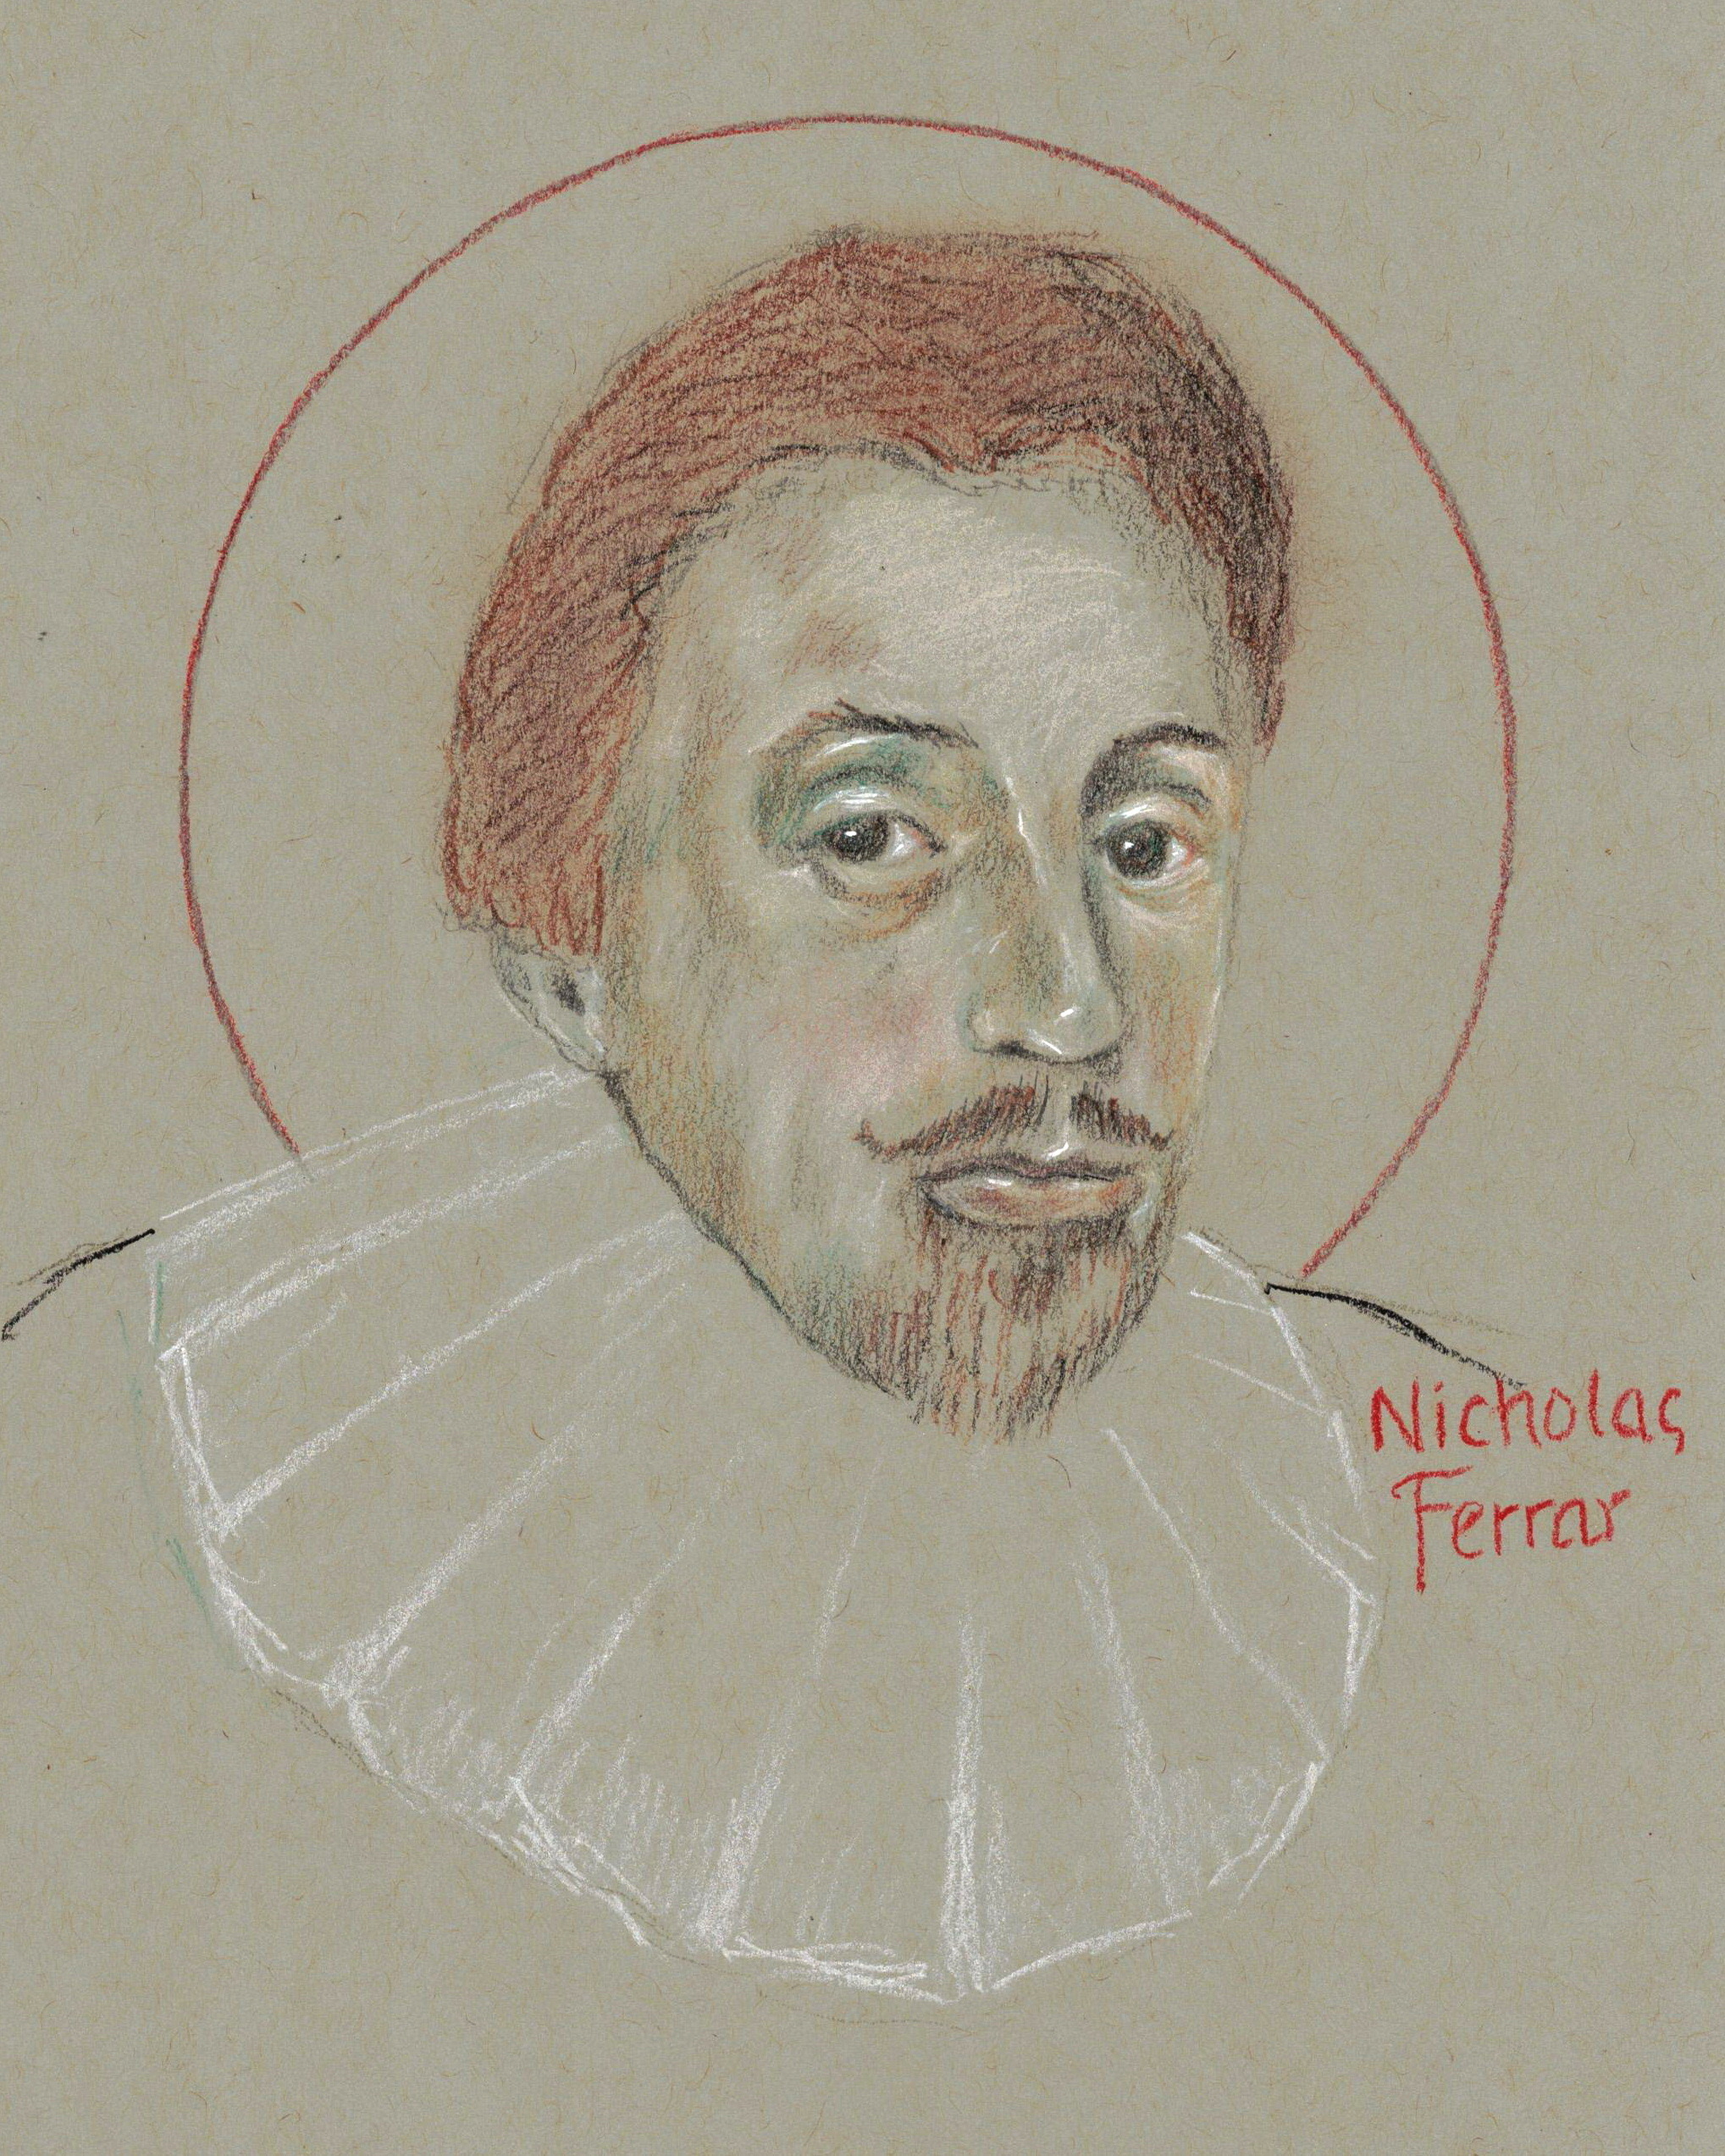 Nicholas Ferrar <em>and</em> Charles de Foucauld